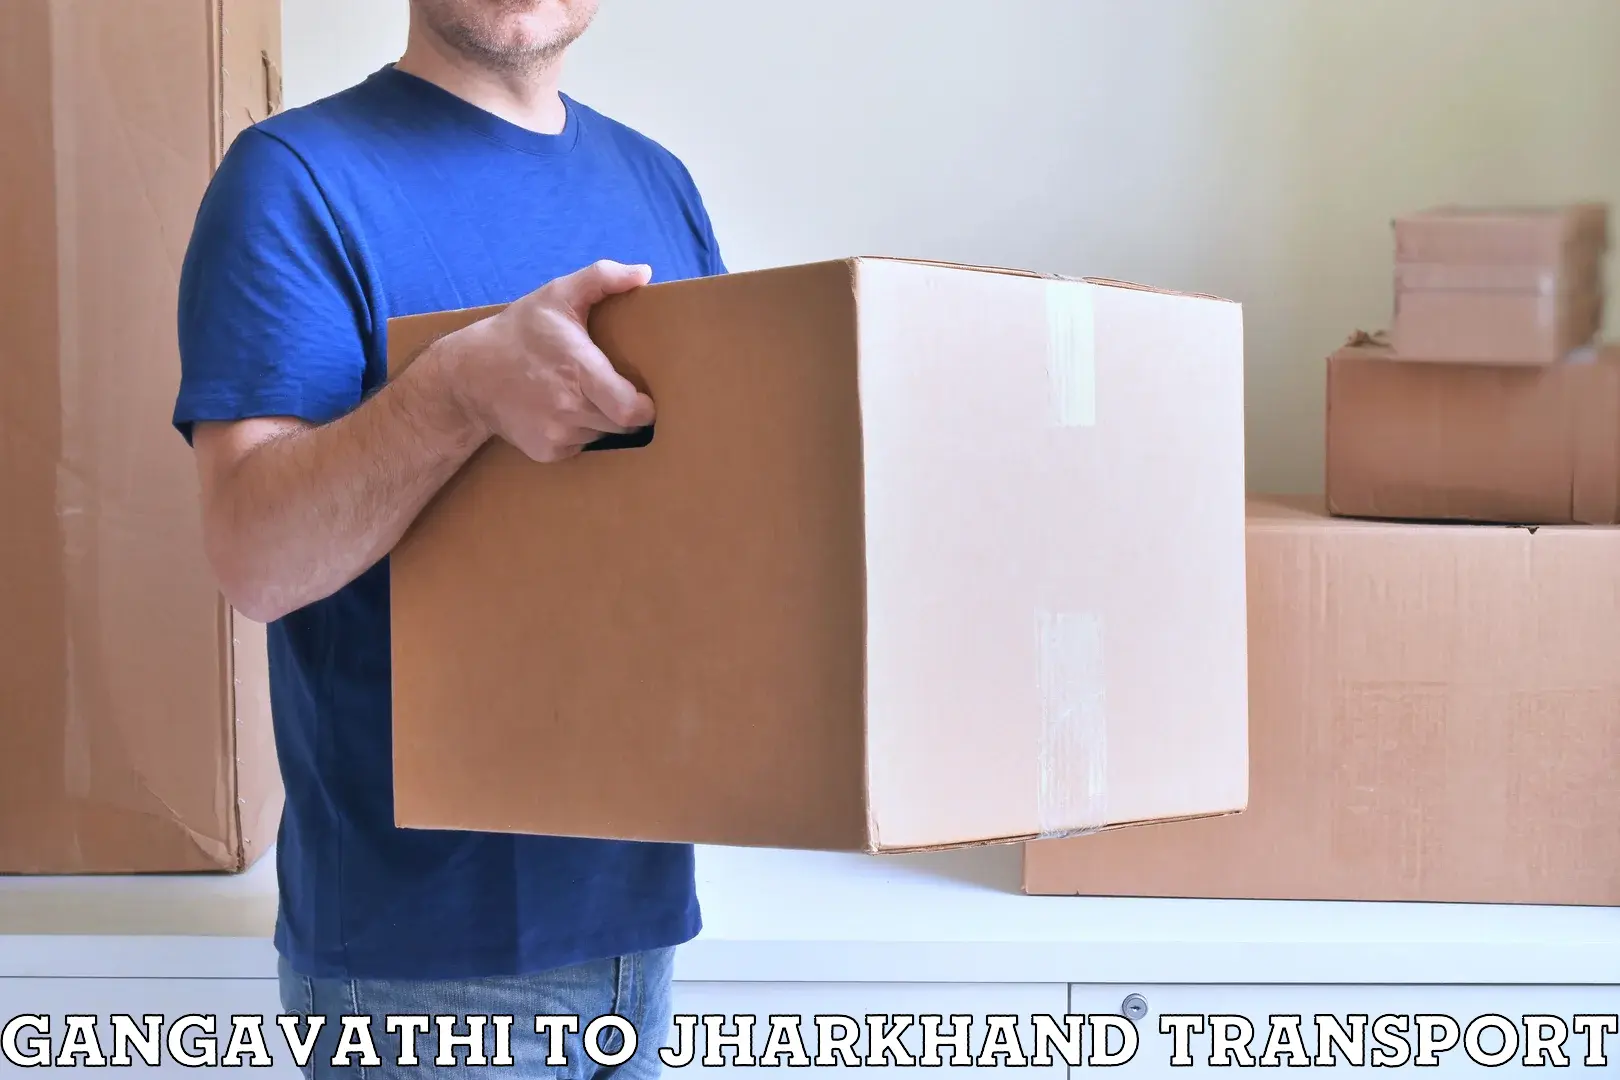 Two wheeler parcel service Gangavathi to IIT Dhanbad